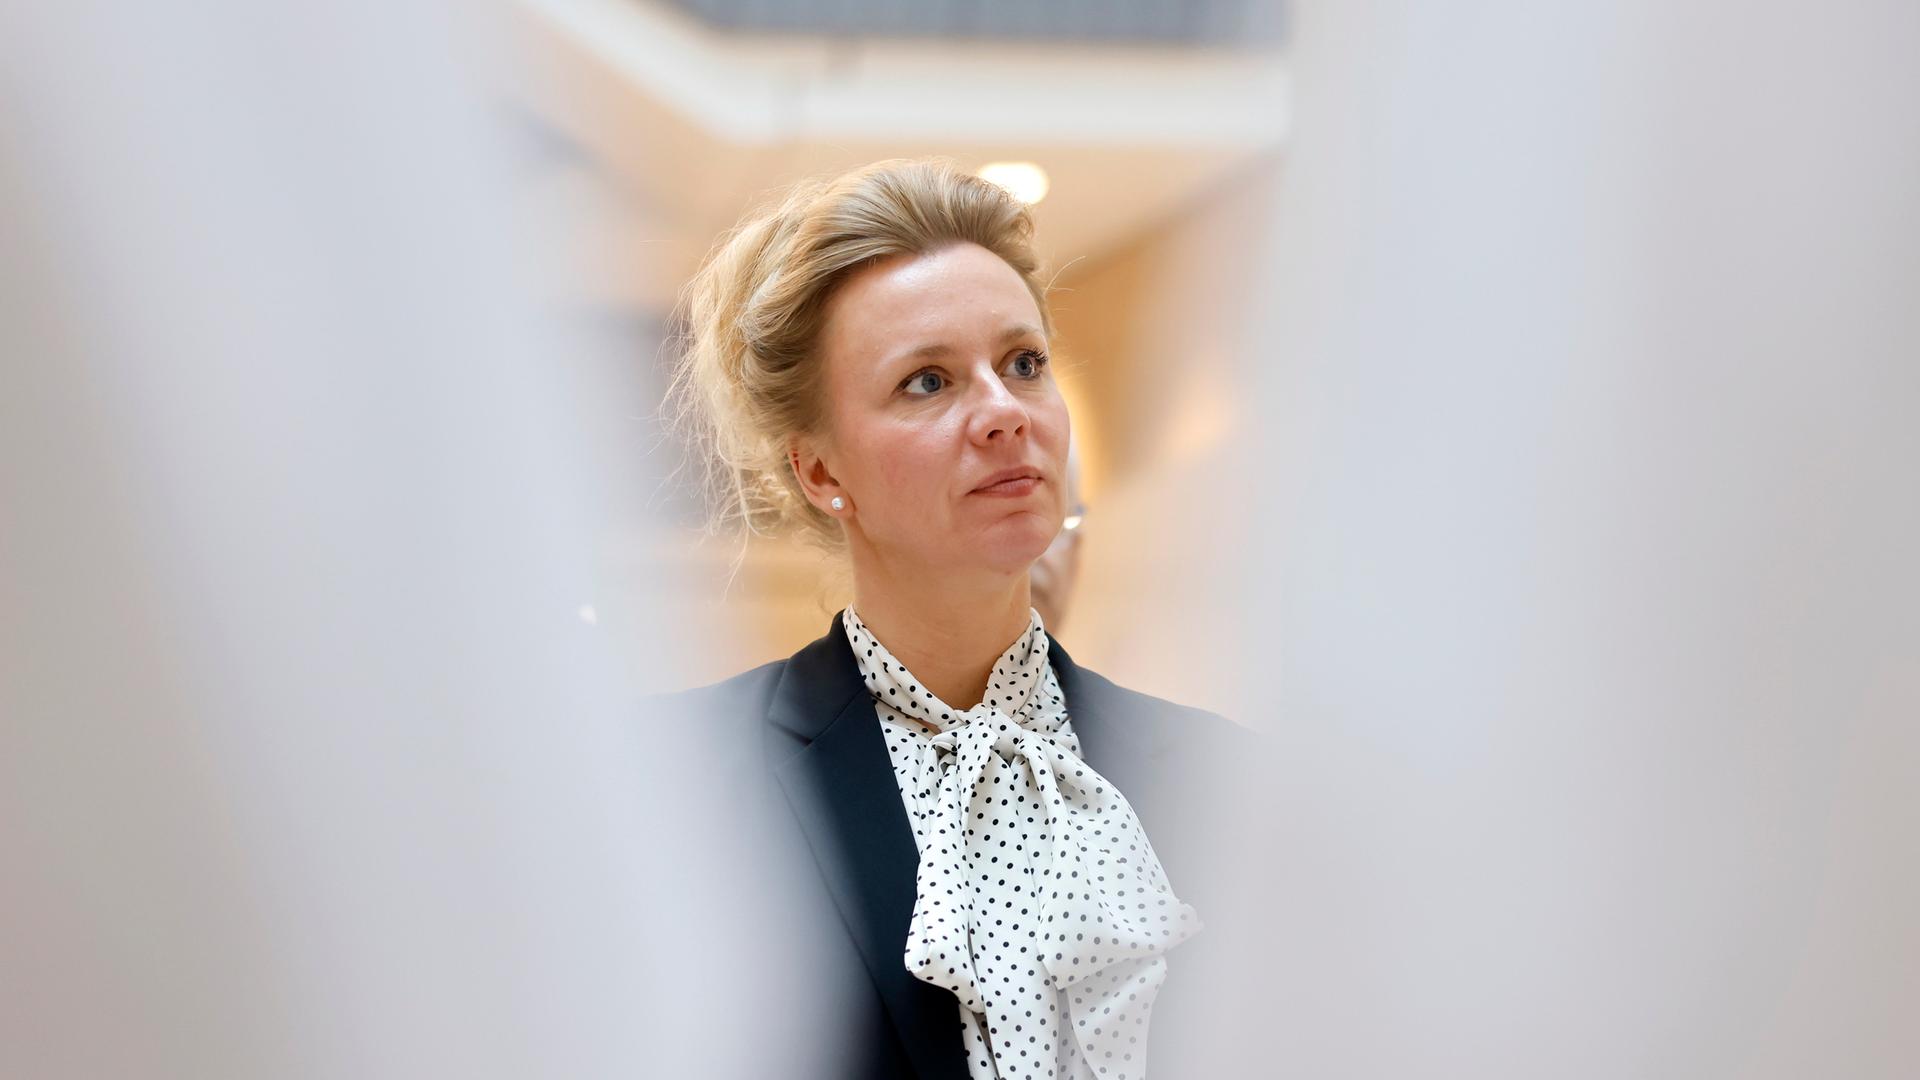 NRW-Wissenschaftsministerin Ina Brandes (CDU) hat lange, blonde Haare, die sie nach hinten zusammengesteckt hat. Zum dunklen Blazer trägt sie ein weiß-blau gepunktetes Tuch.